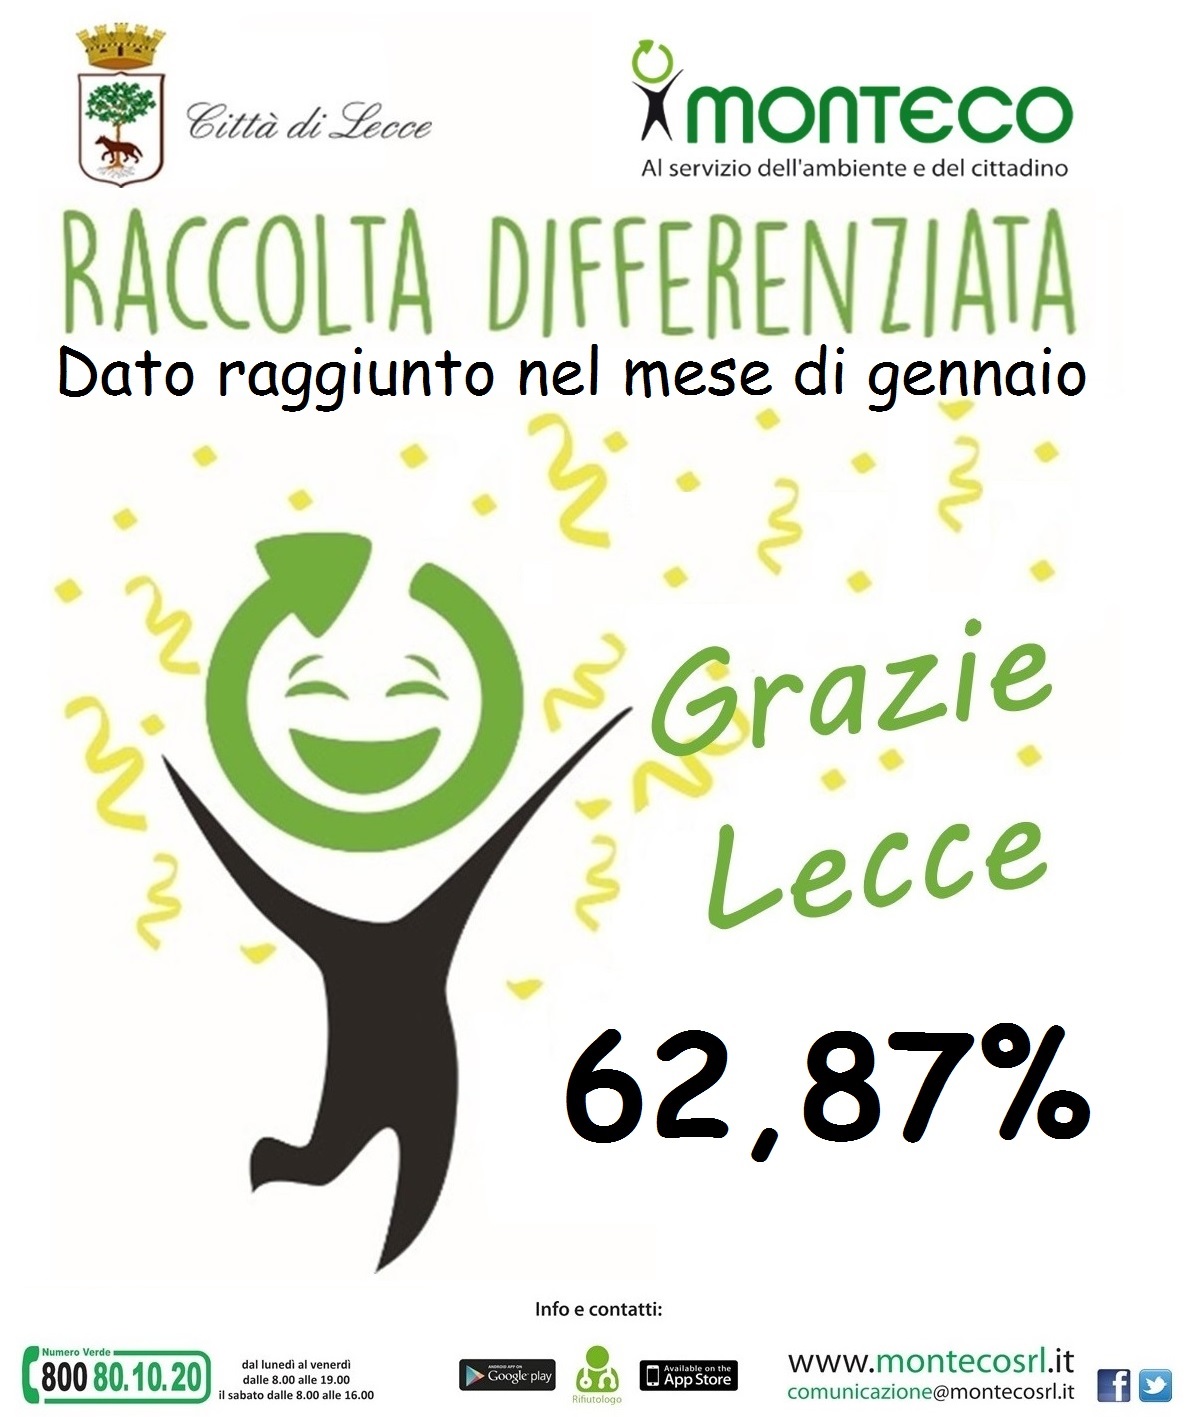 Dati raccolta differenziata a Lecce: raggiunto il 62,87% nel mese di gennaio